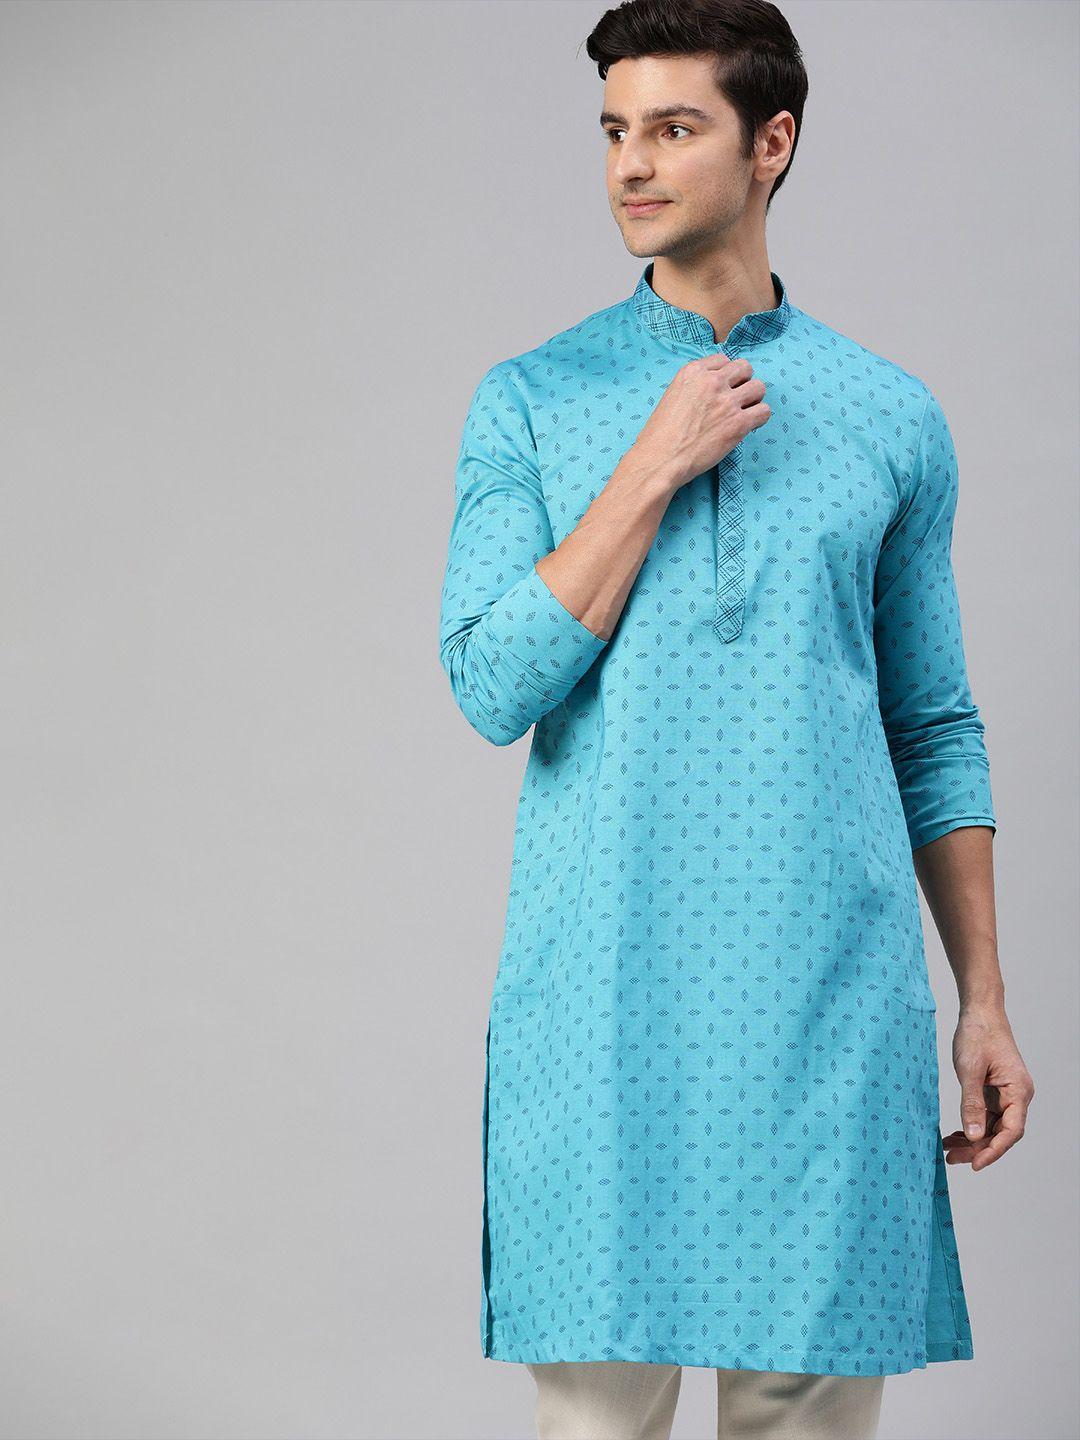 manthan-men-turquoise-blue-geometric-printed-kurta